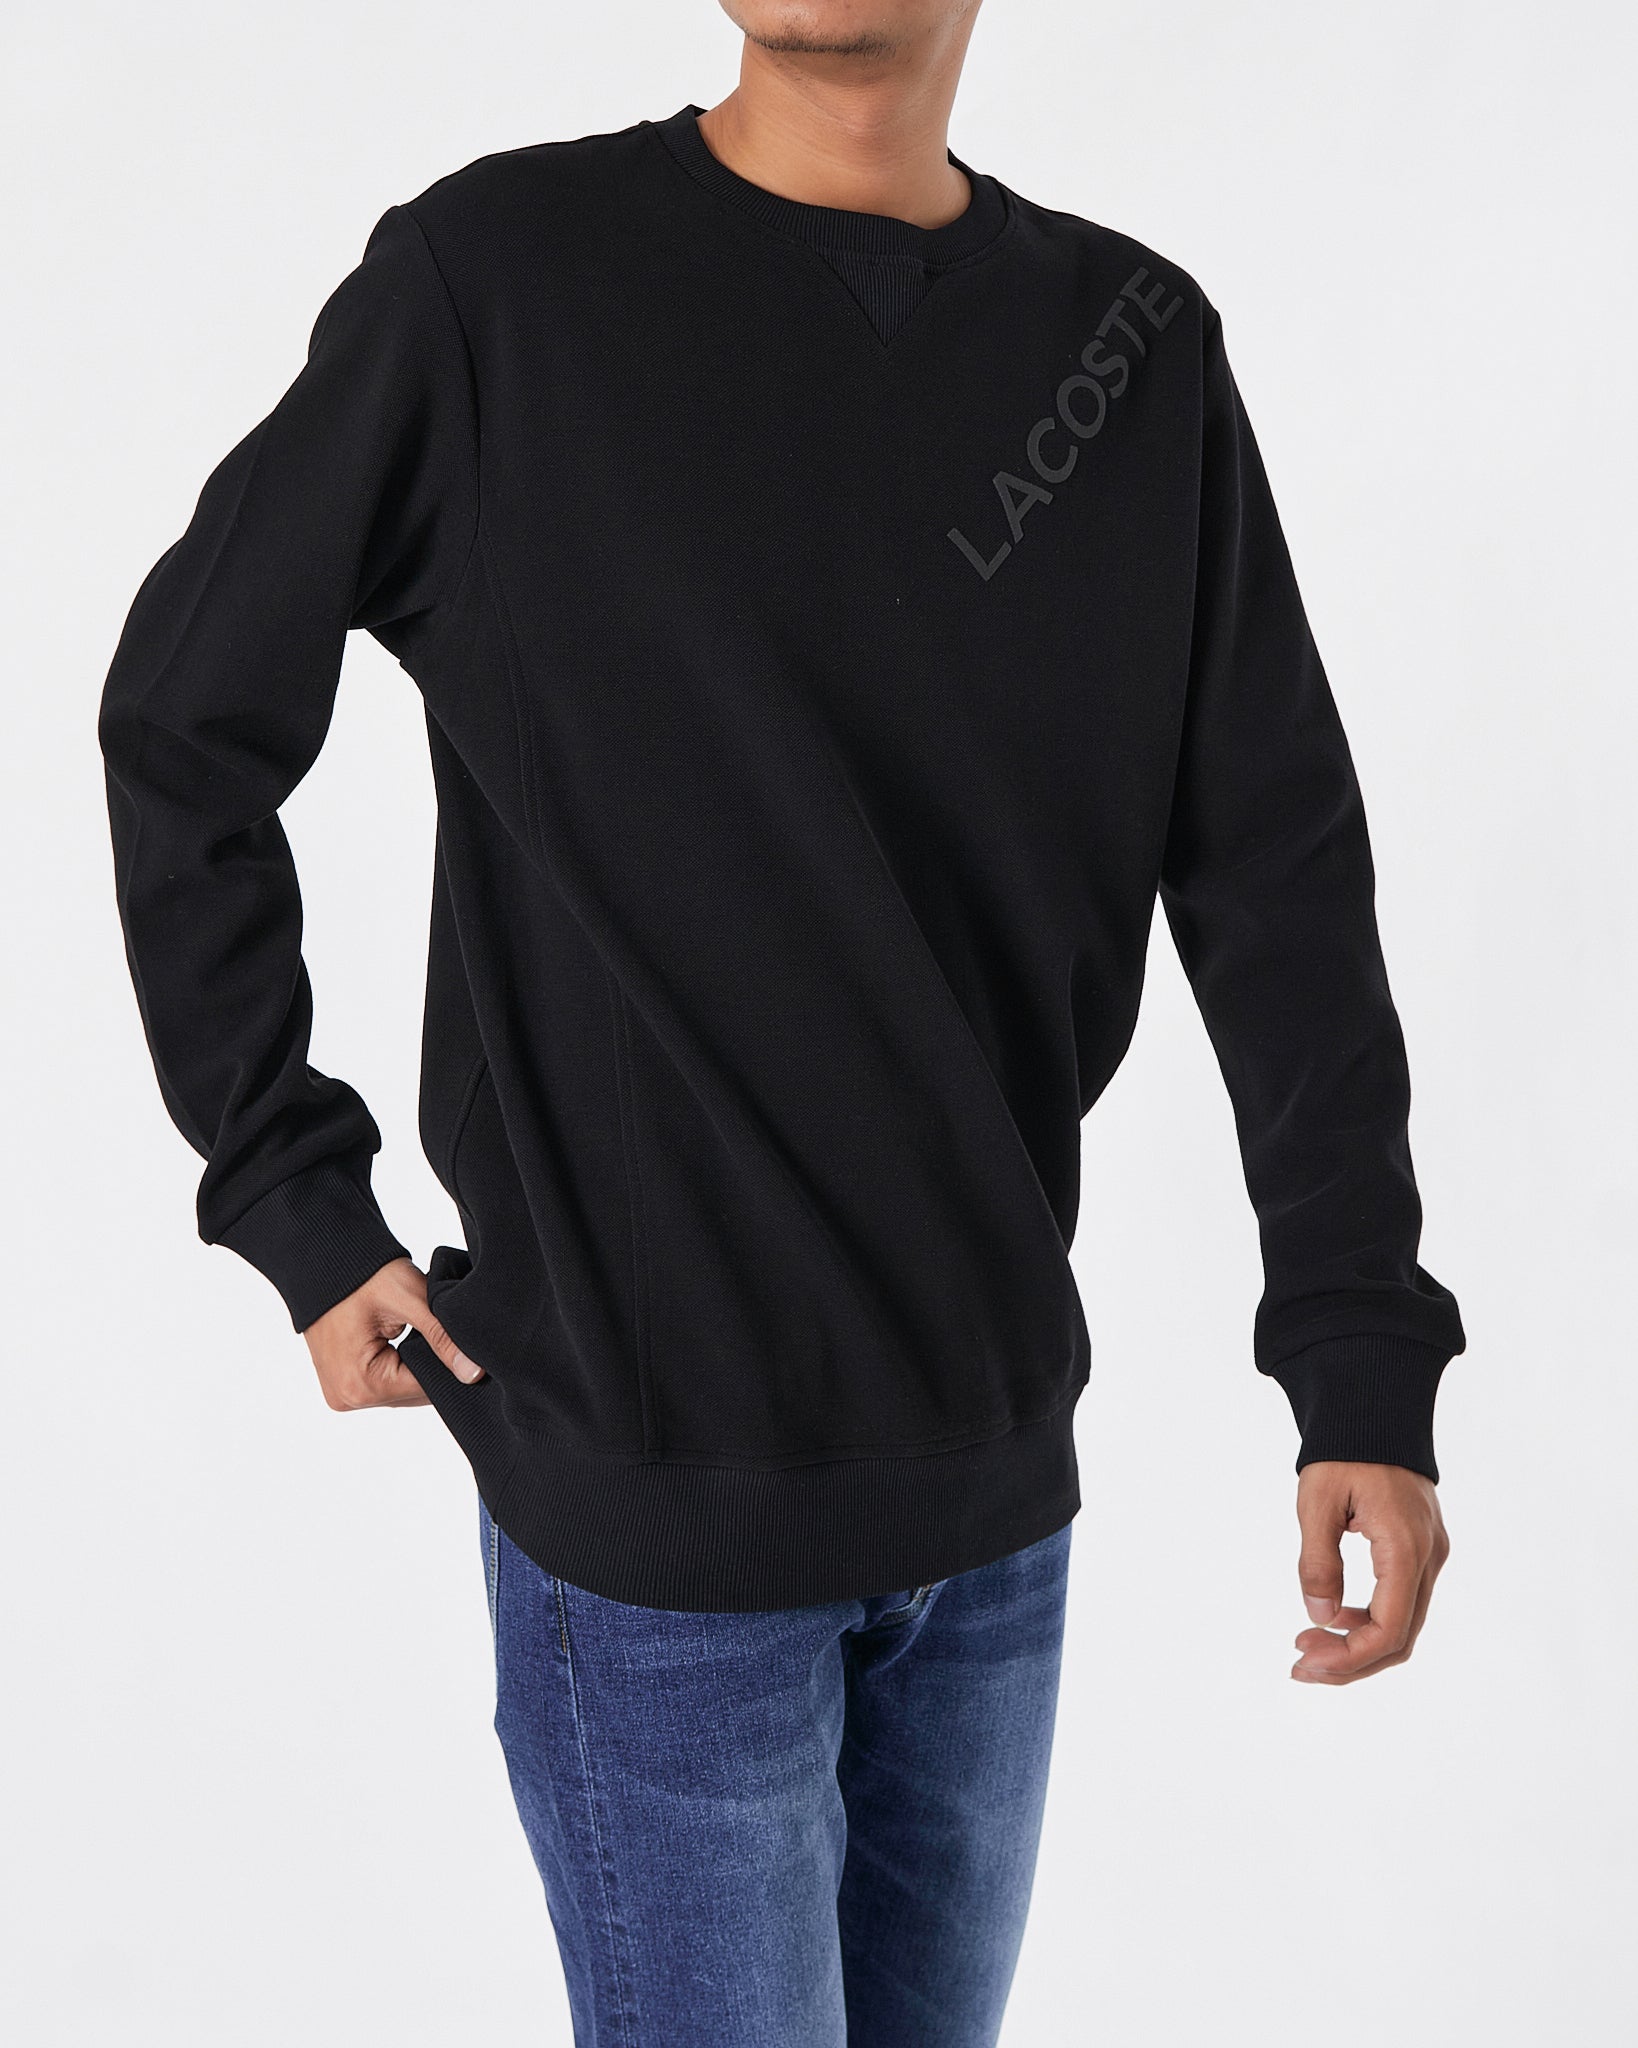 LAC Plain Color Men Black Sweater 22.90